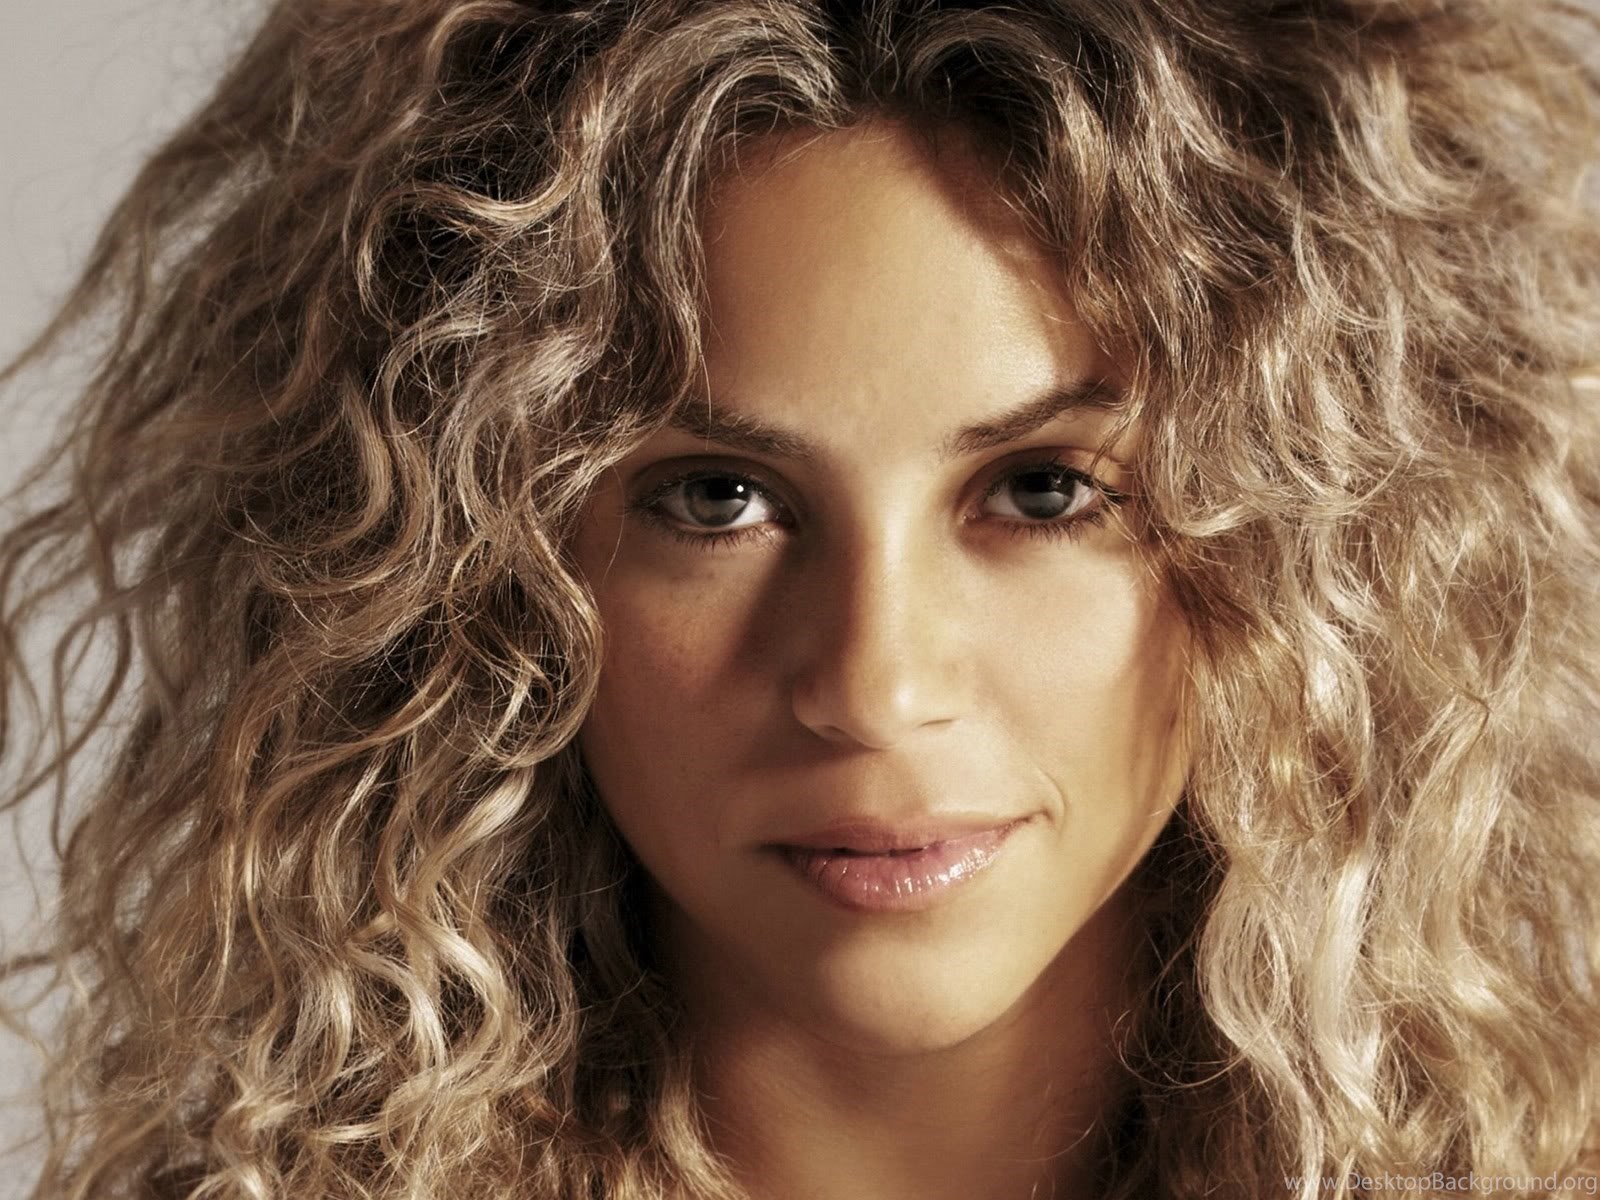 Download Shakira Hair Wallpapers 63739 Fullscreen Standart 4:3 1600x1200 De...